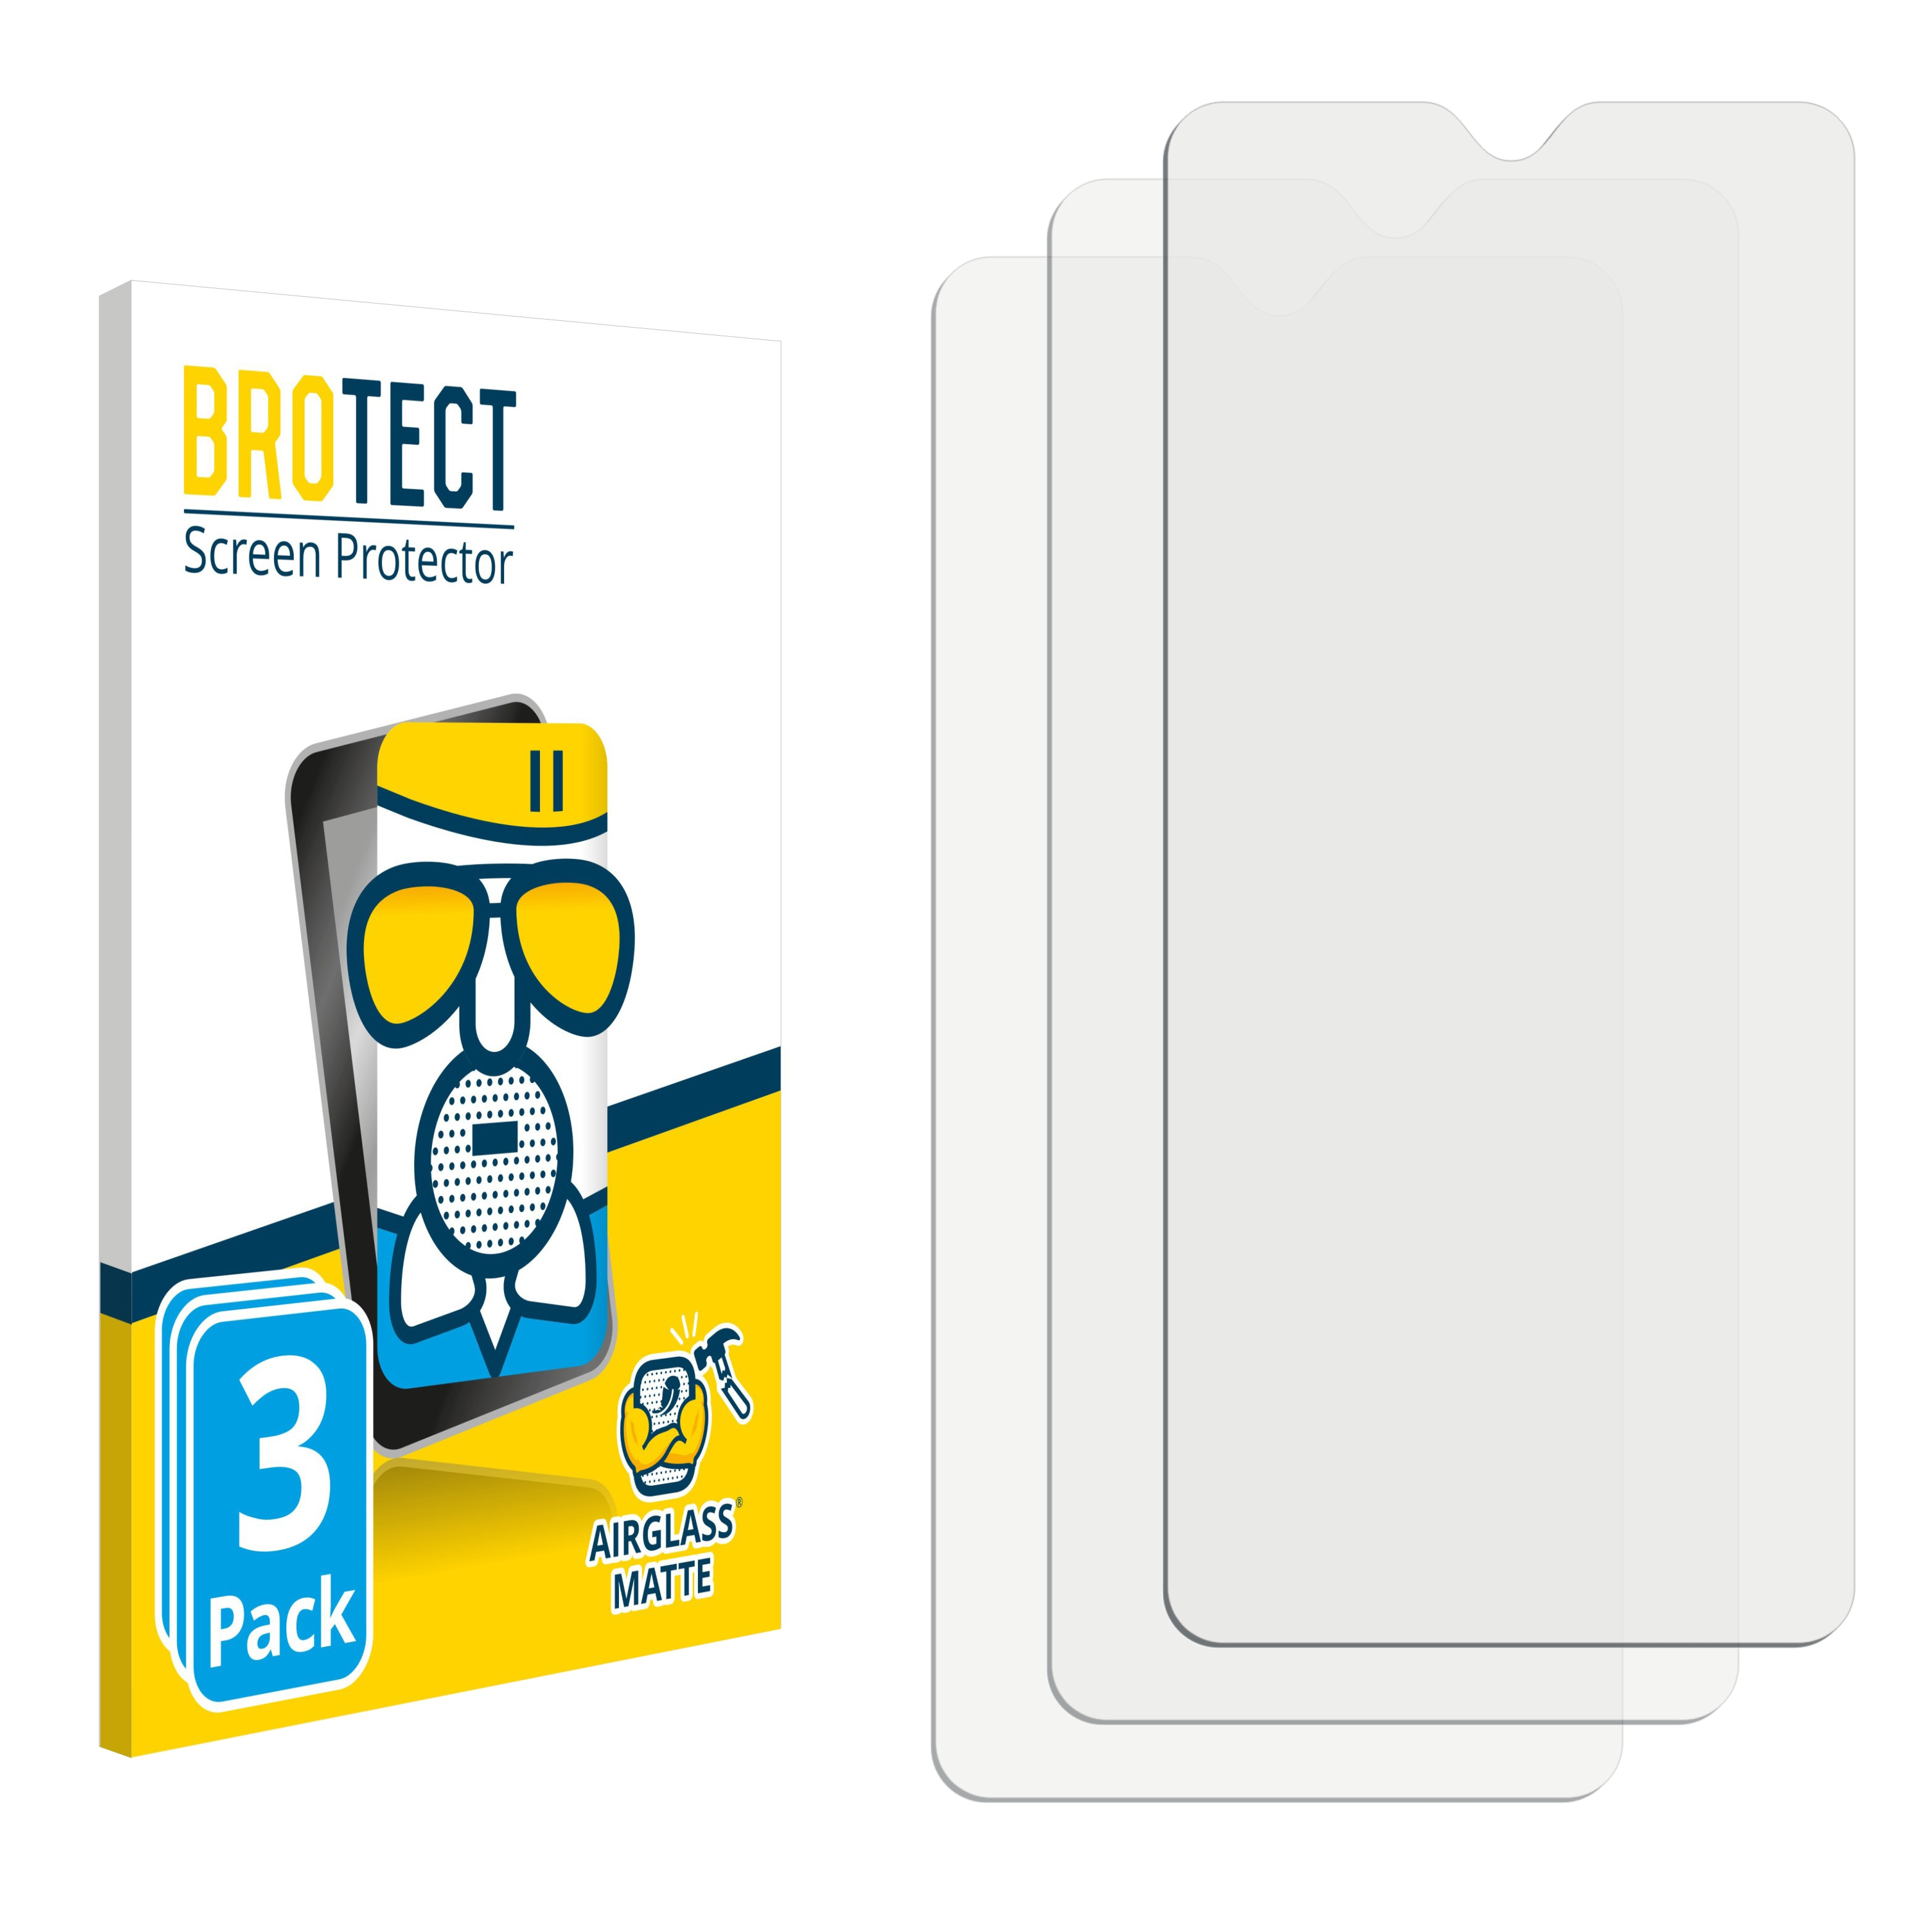 BROTECT 3x Airglass matte 1S 2020) Alcatel Schutzfolie(für